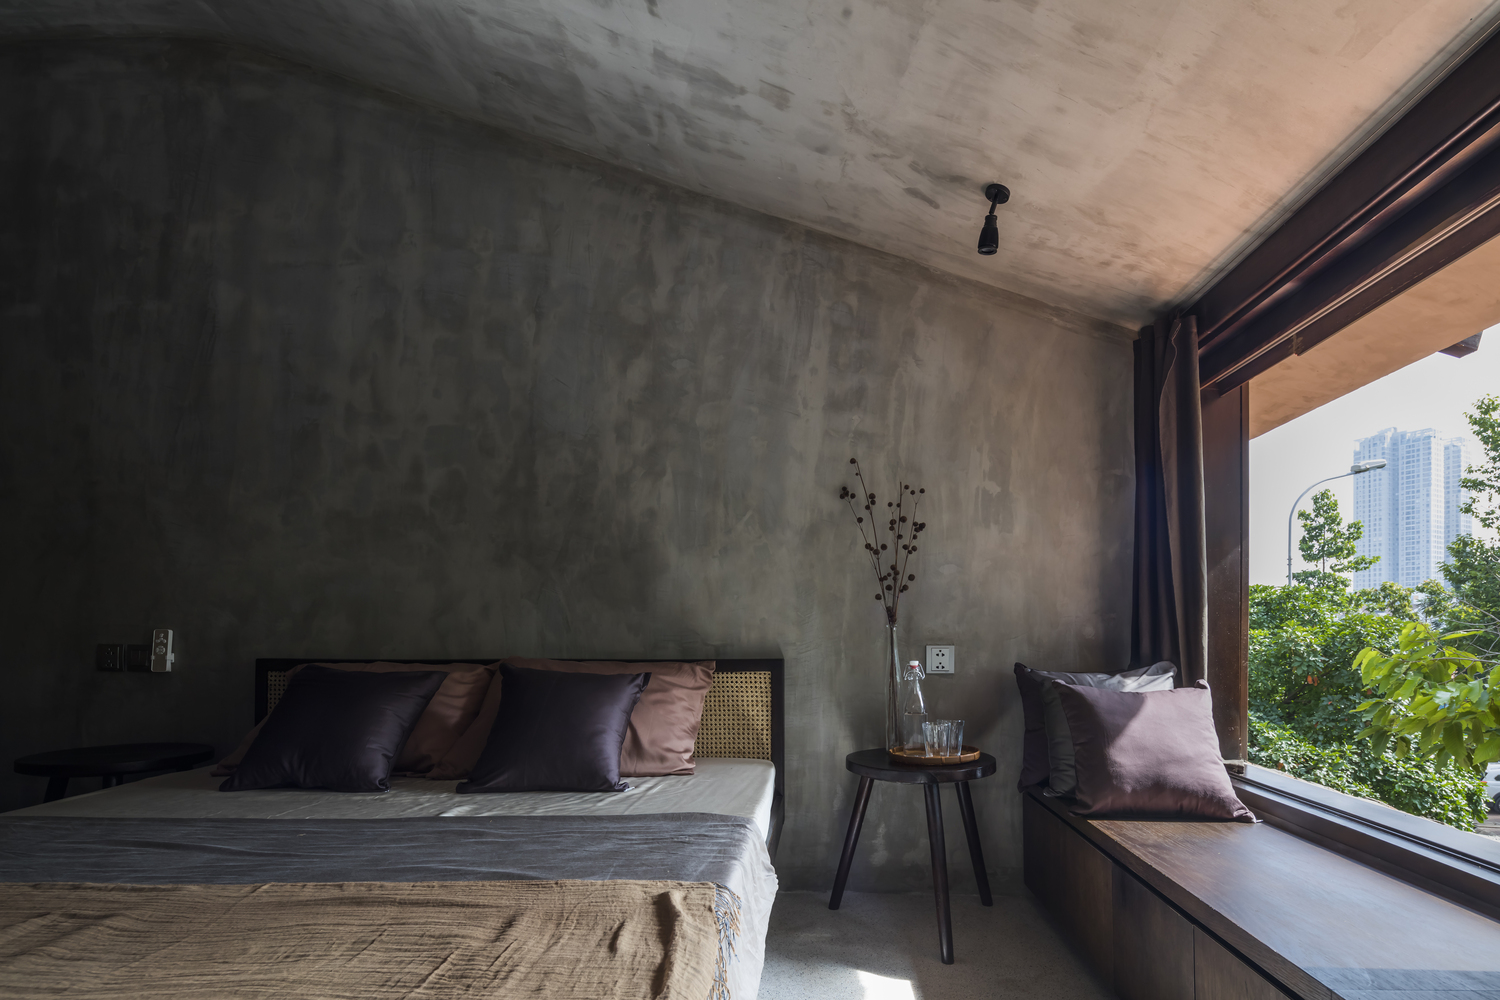 Tường, trần, sàn nhà bê tông màu xám kết hợp hài hòa cùng nội thất tối giản mang đến cho người ngủ trong phòng cảm giác thư thái, thoải mái nhất.